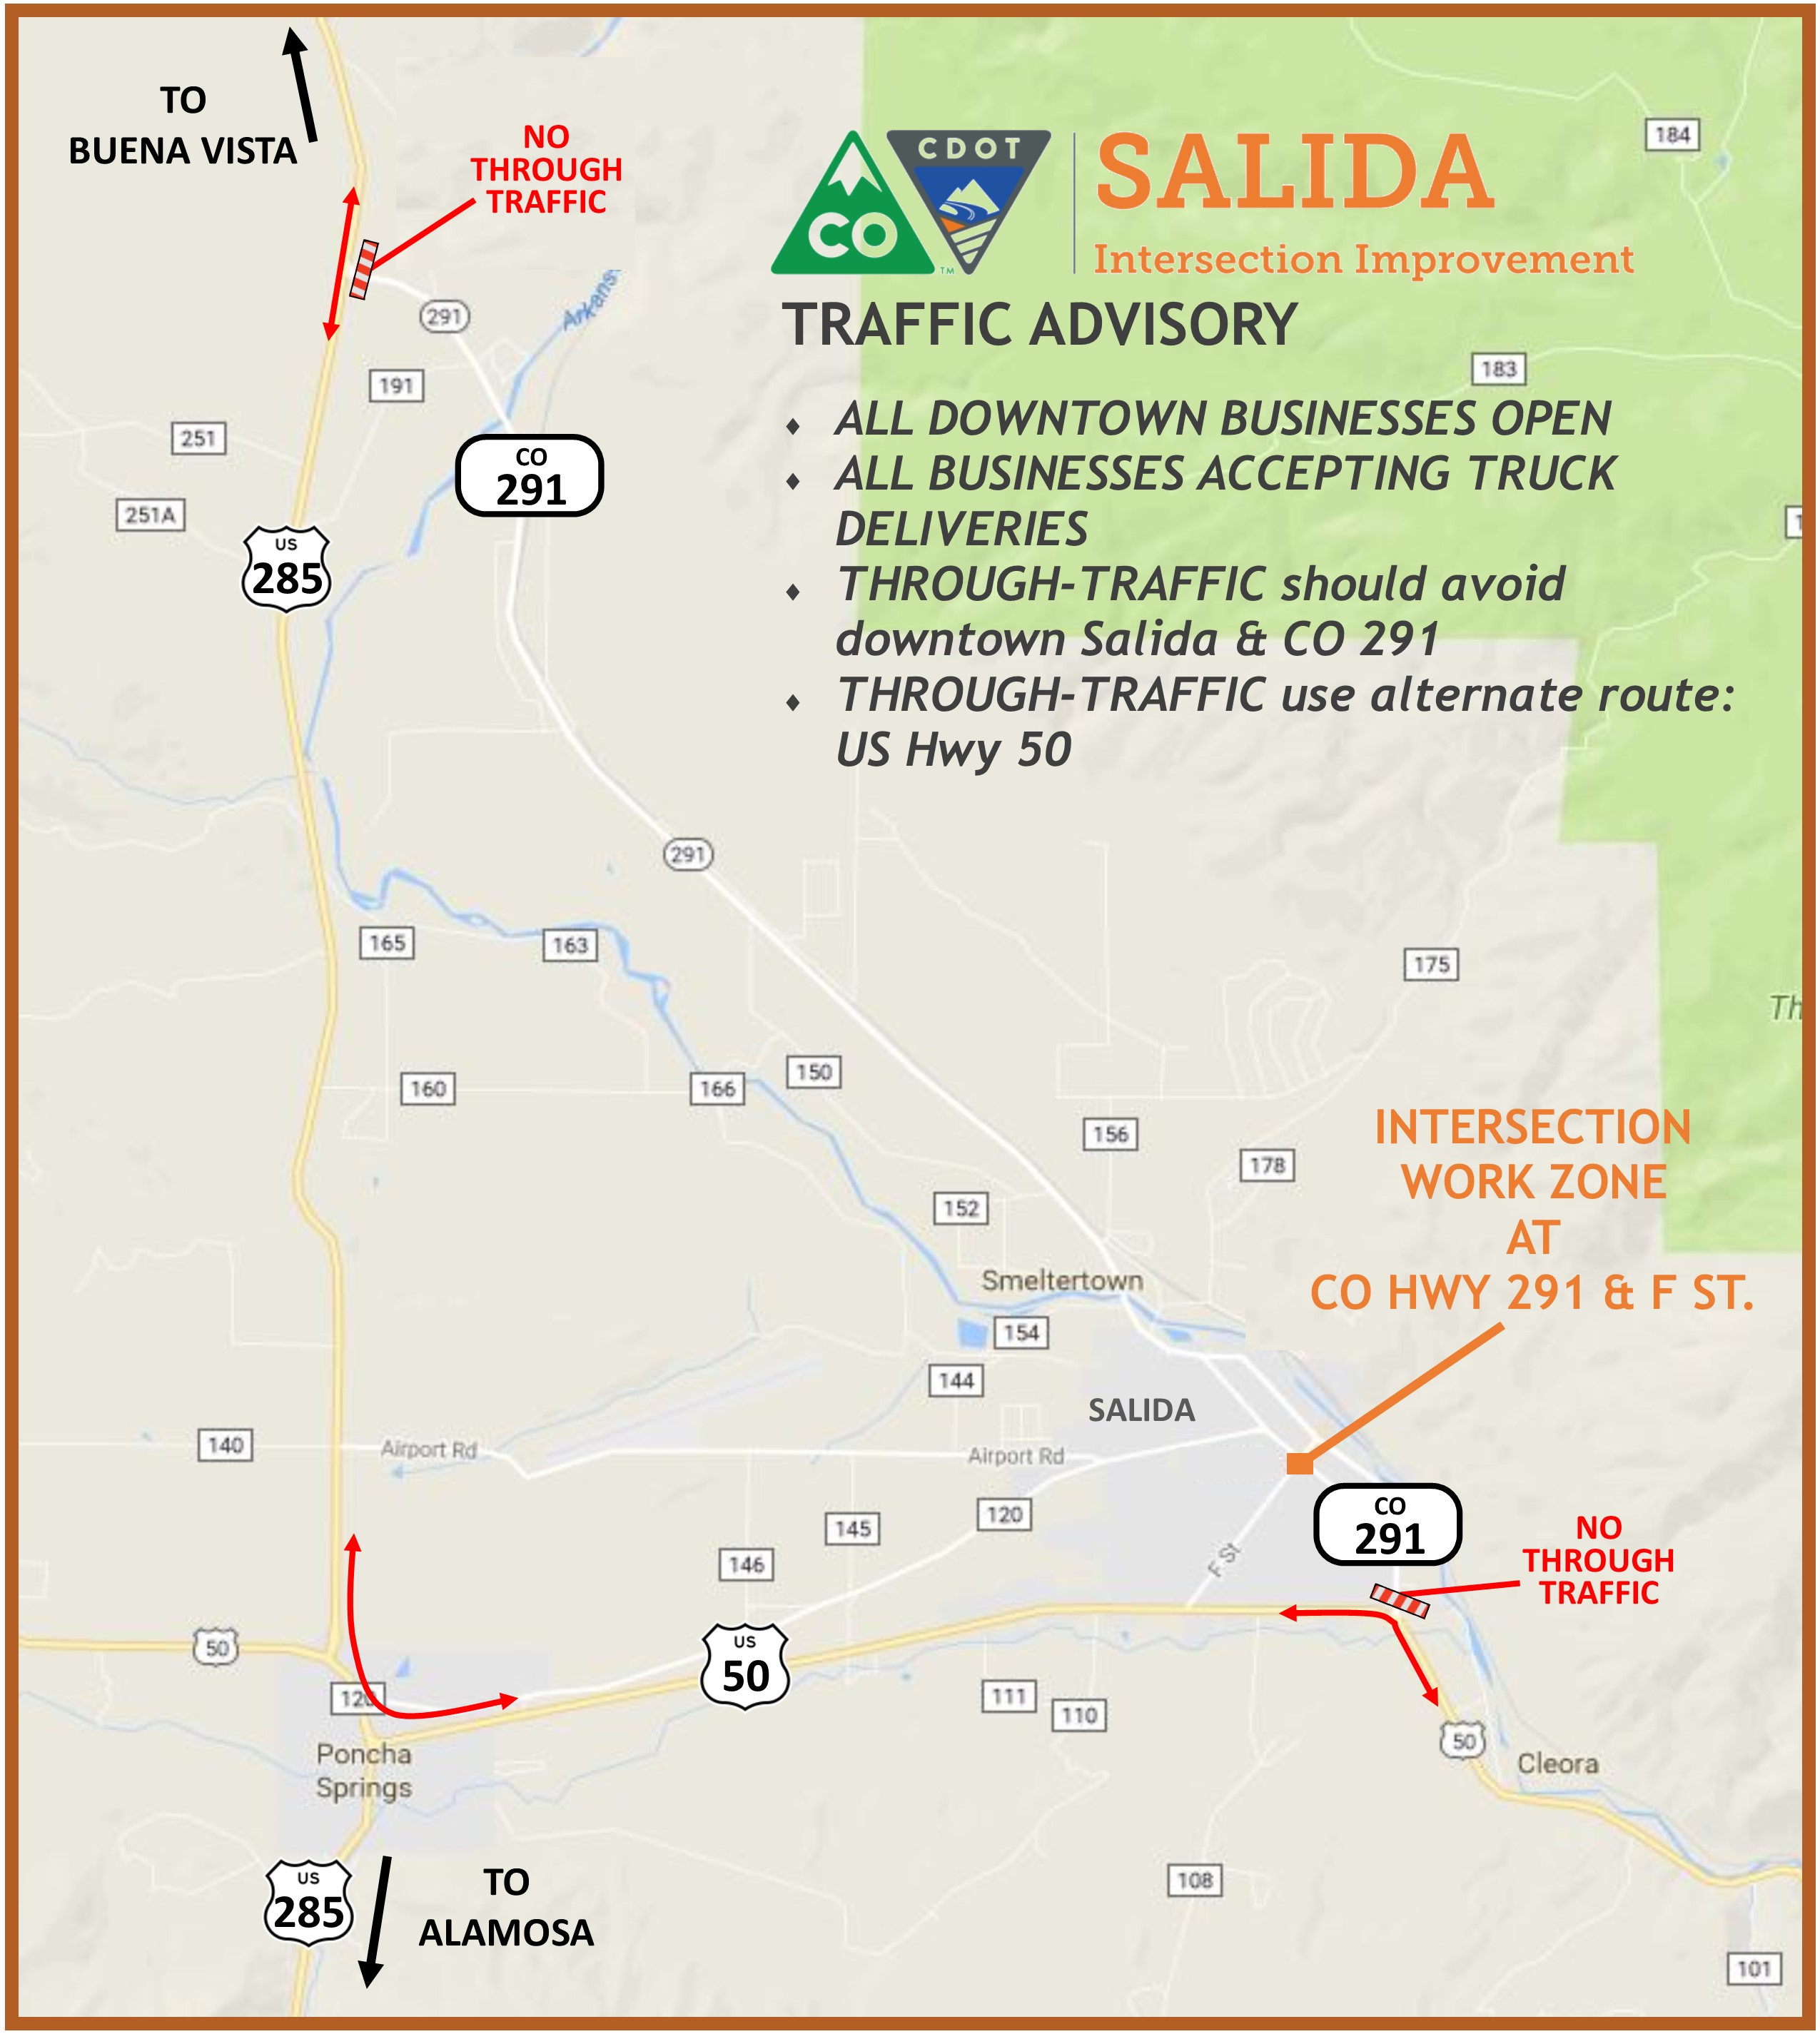 Salida-Map-No-Through-Traffic-CO-291.jpg detail image